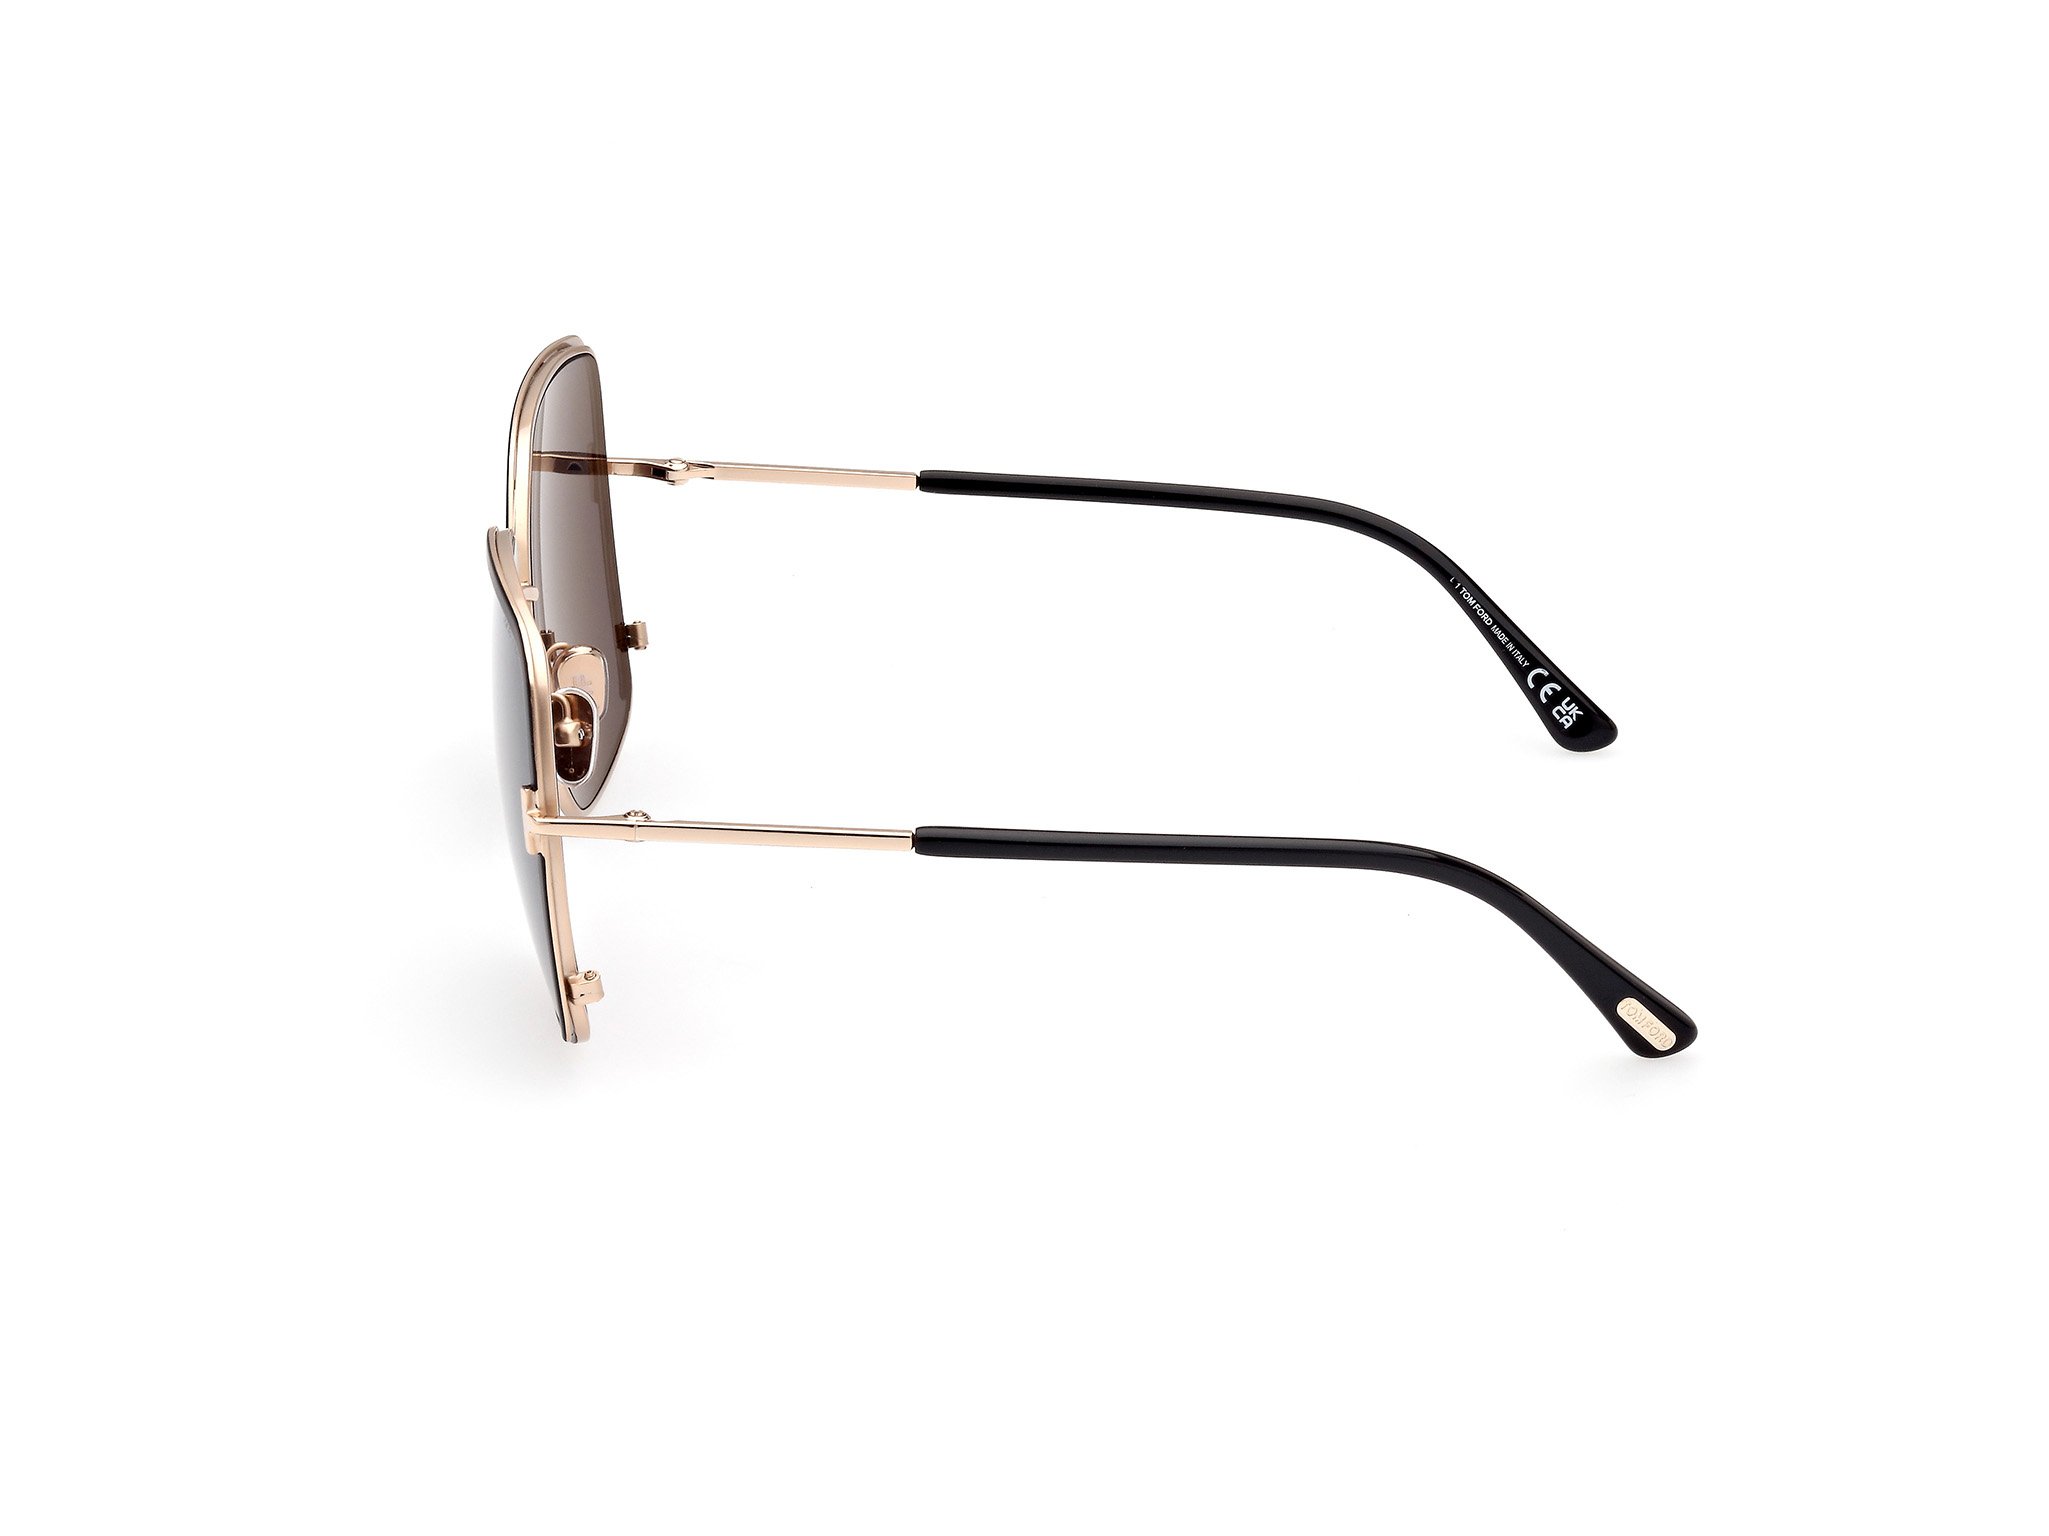 Tom Ford Sonnenbrille für Damen FT1006 02A in schwarz